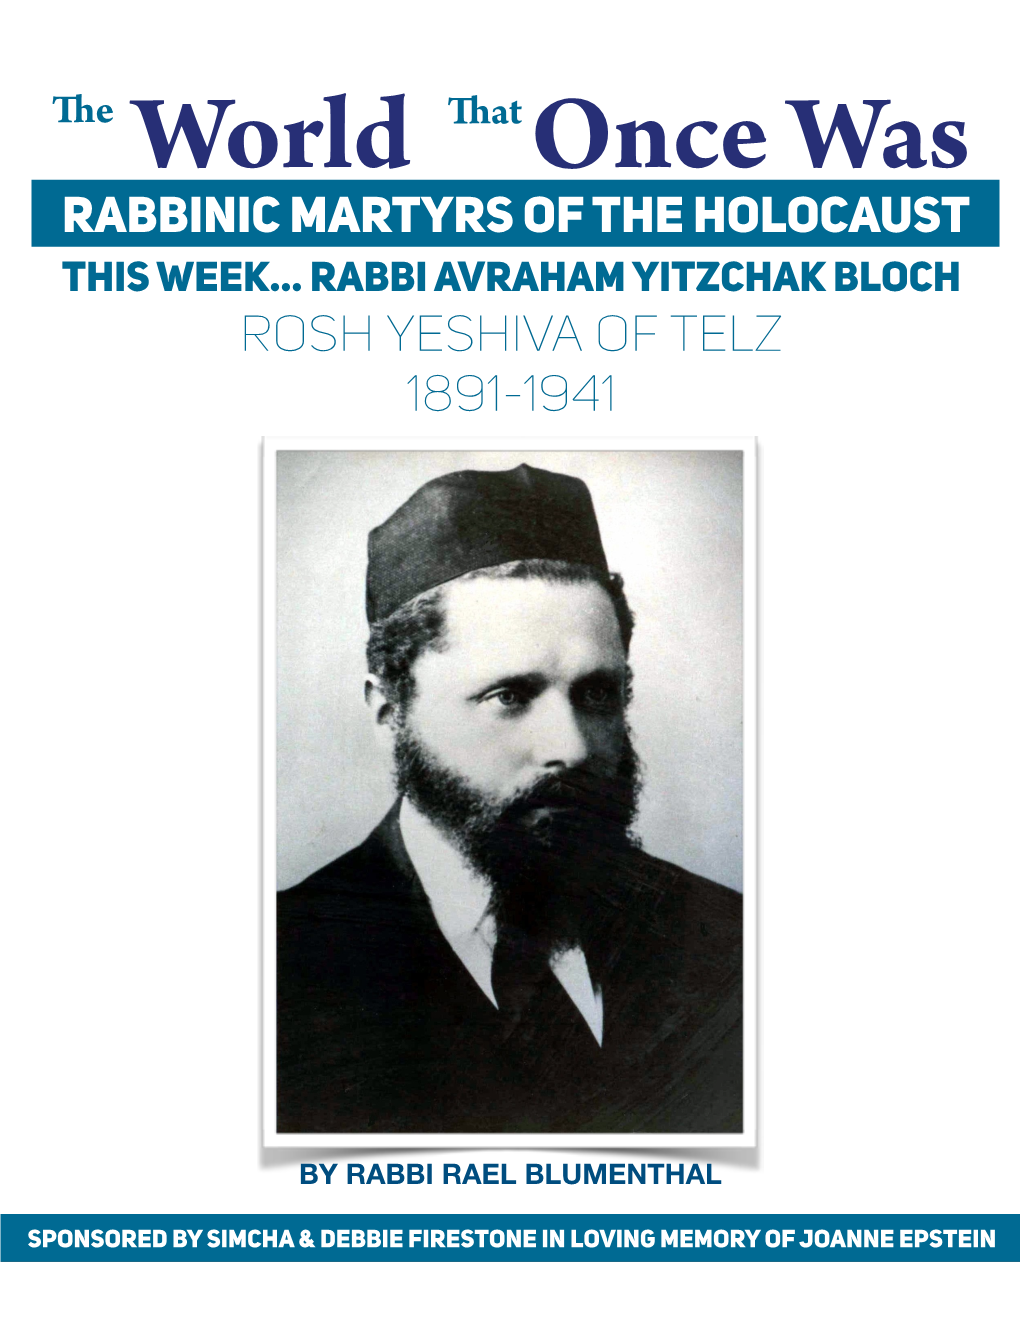 Rabbi Avraham Yitzchak